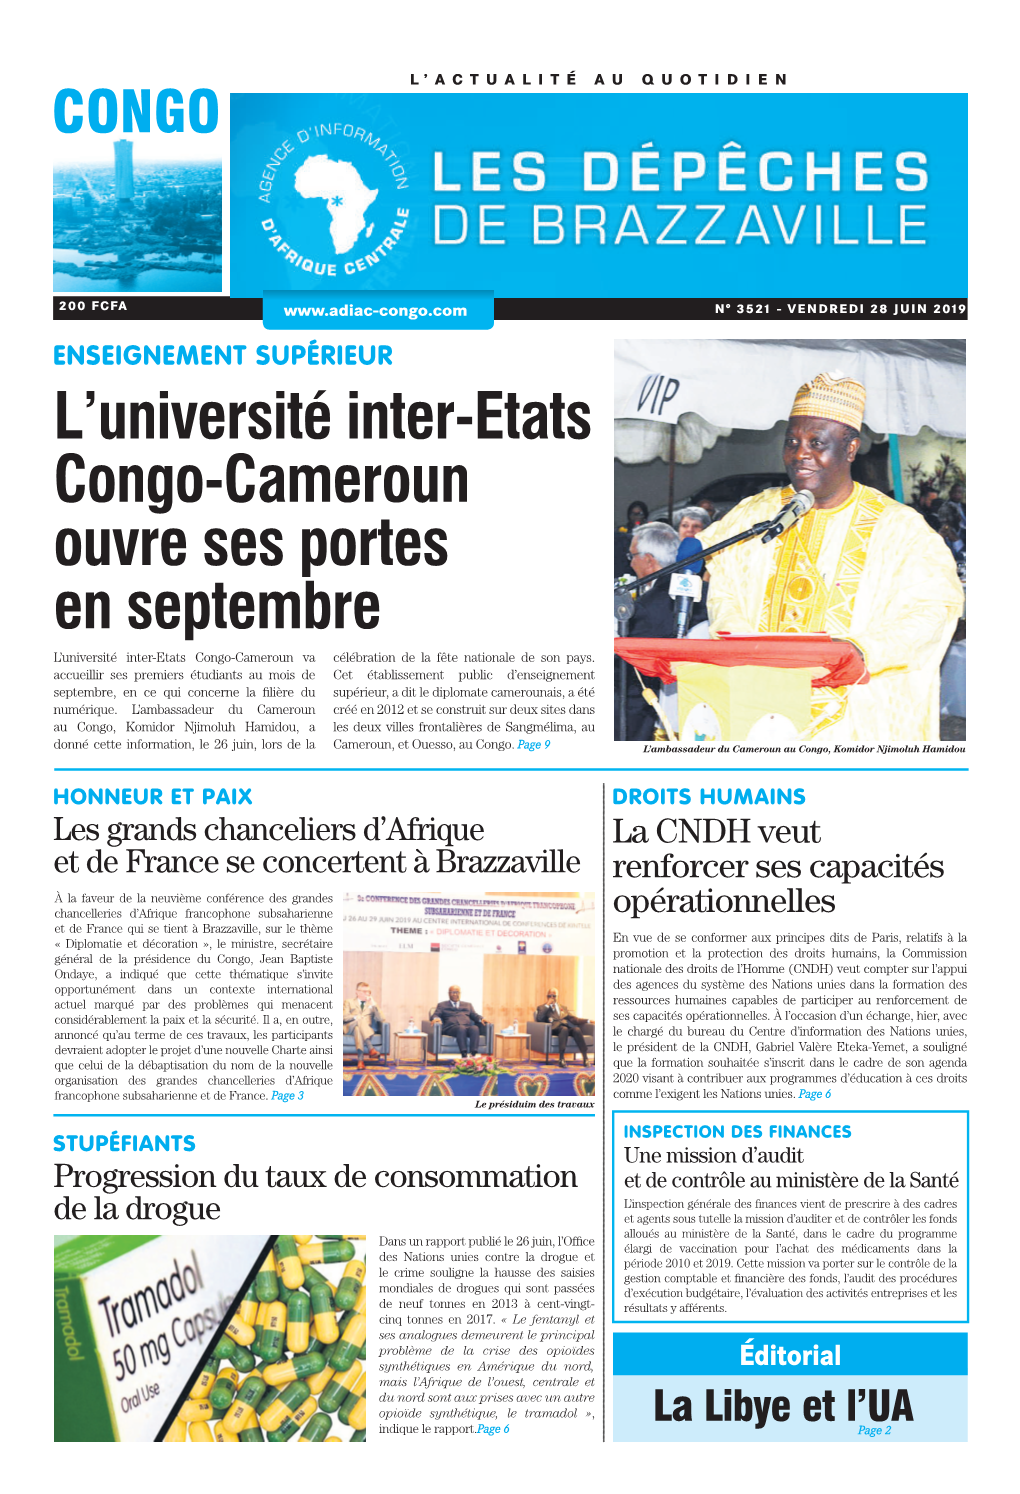 L'université Inter-Etats Congo-Cameroun Ouvre Ses Portes